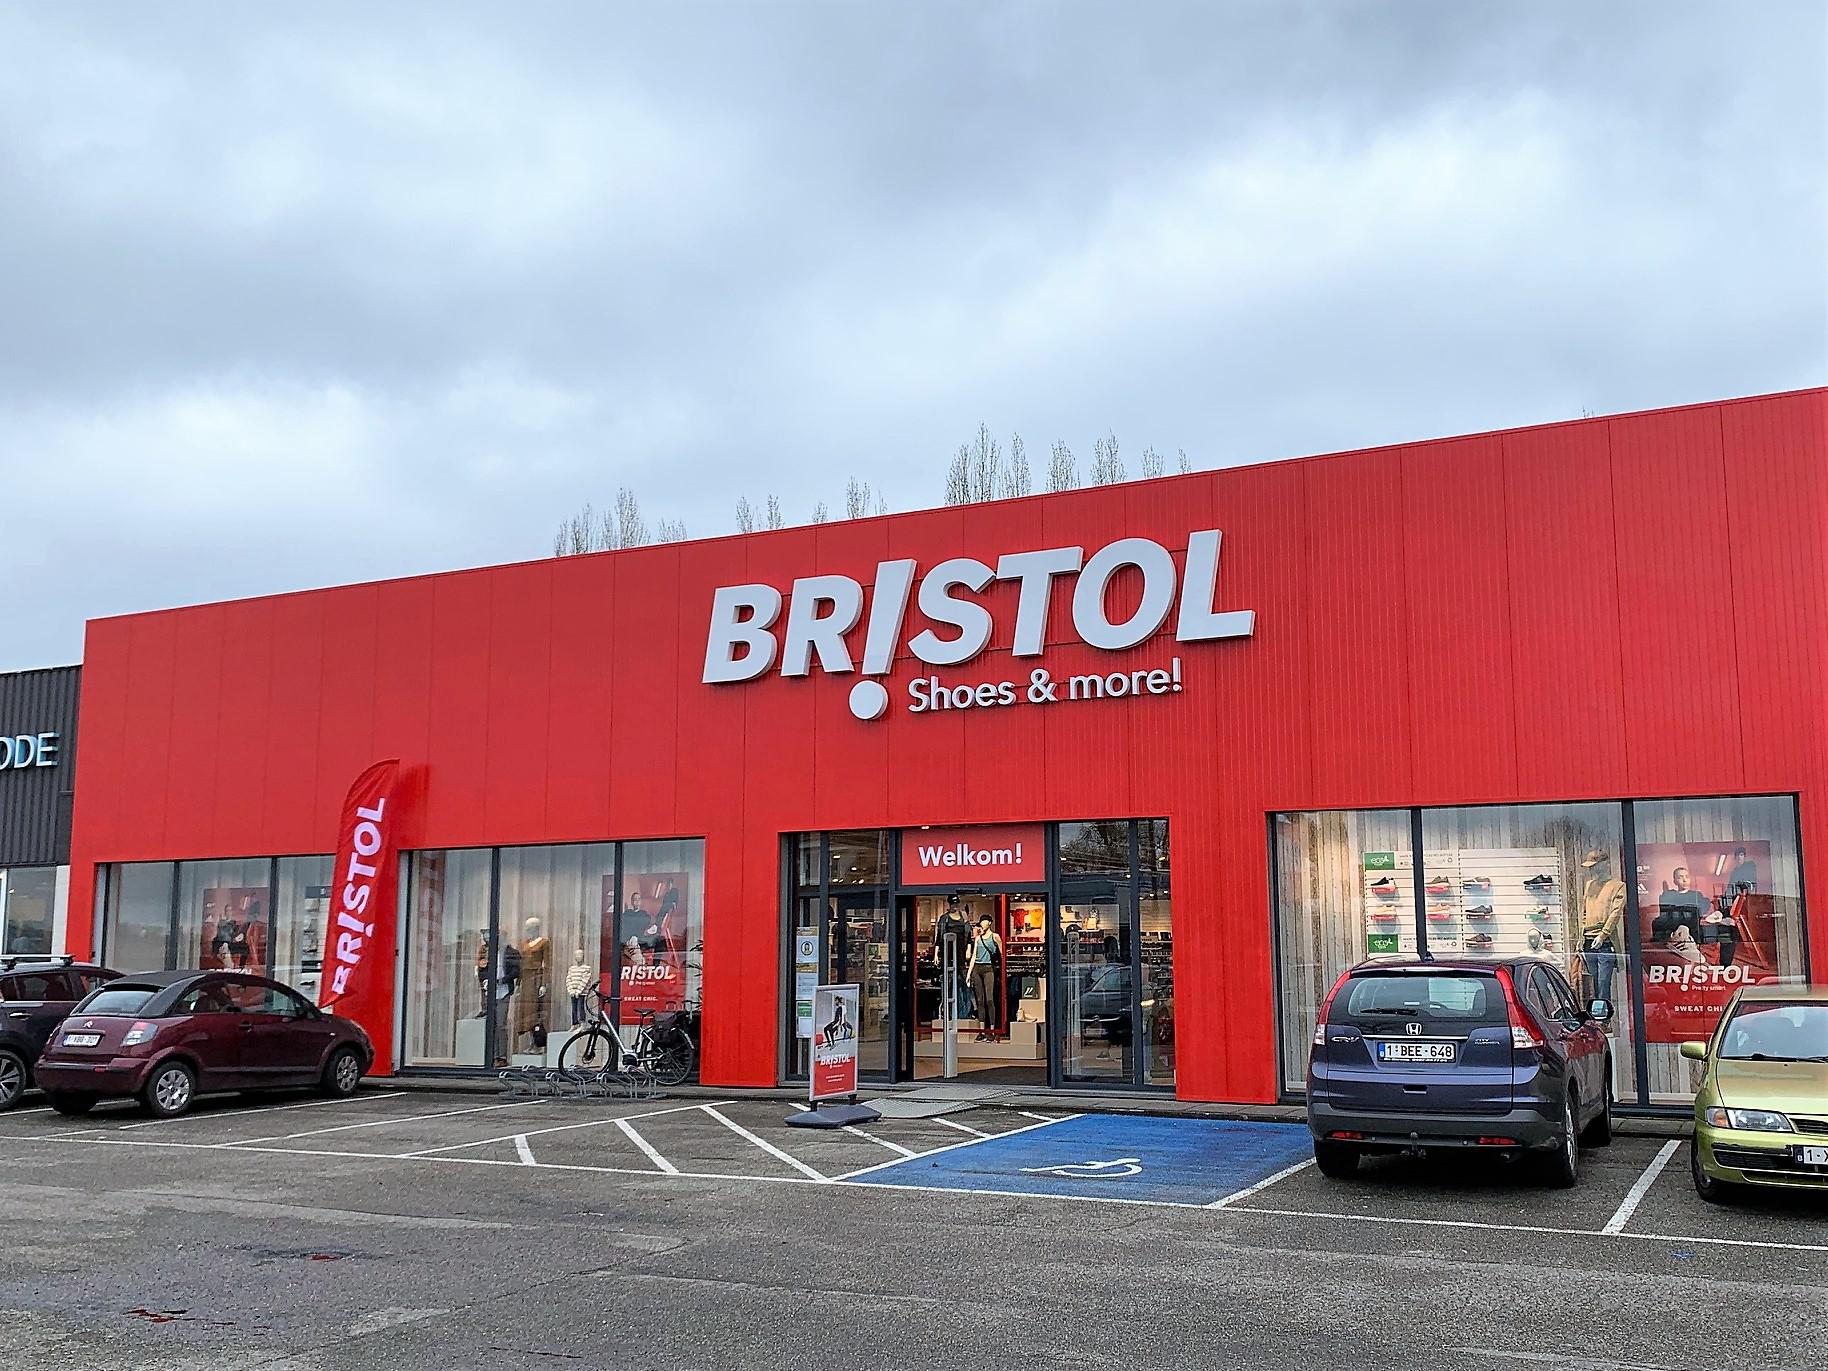 Bristol opent nieuw filiaal in voormalige Brantano op Spijker (Essen) | van Antwerpen Mobile